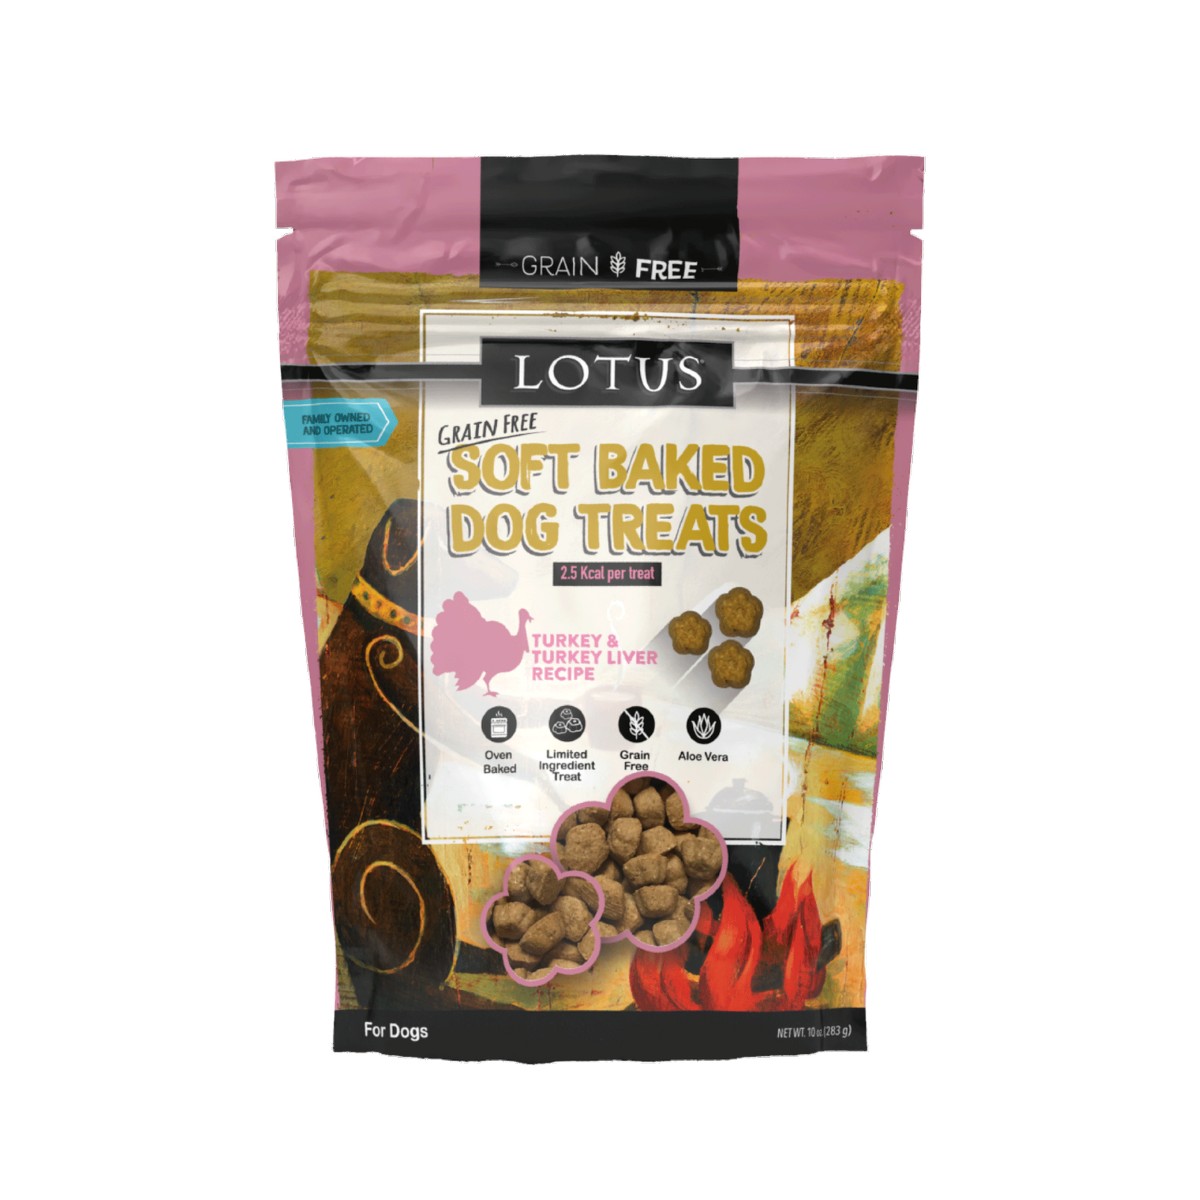 Lotus Grain Free Soft Baked Dog Treats - Turkey Recipe